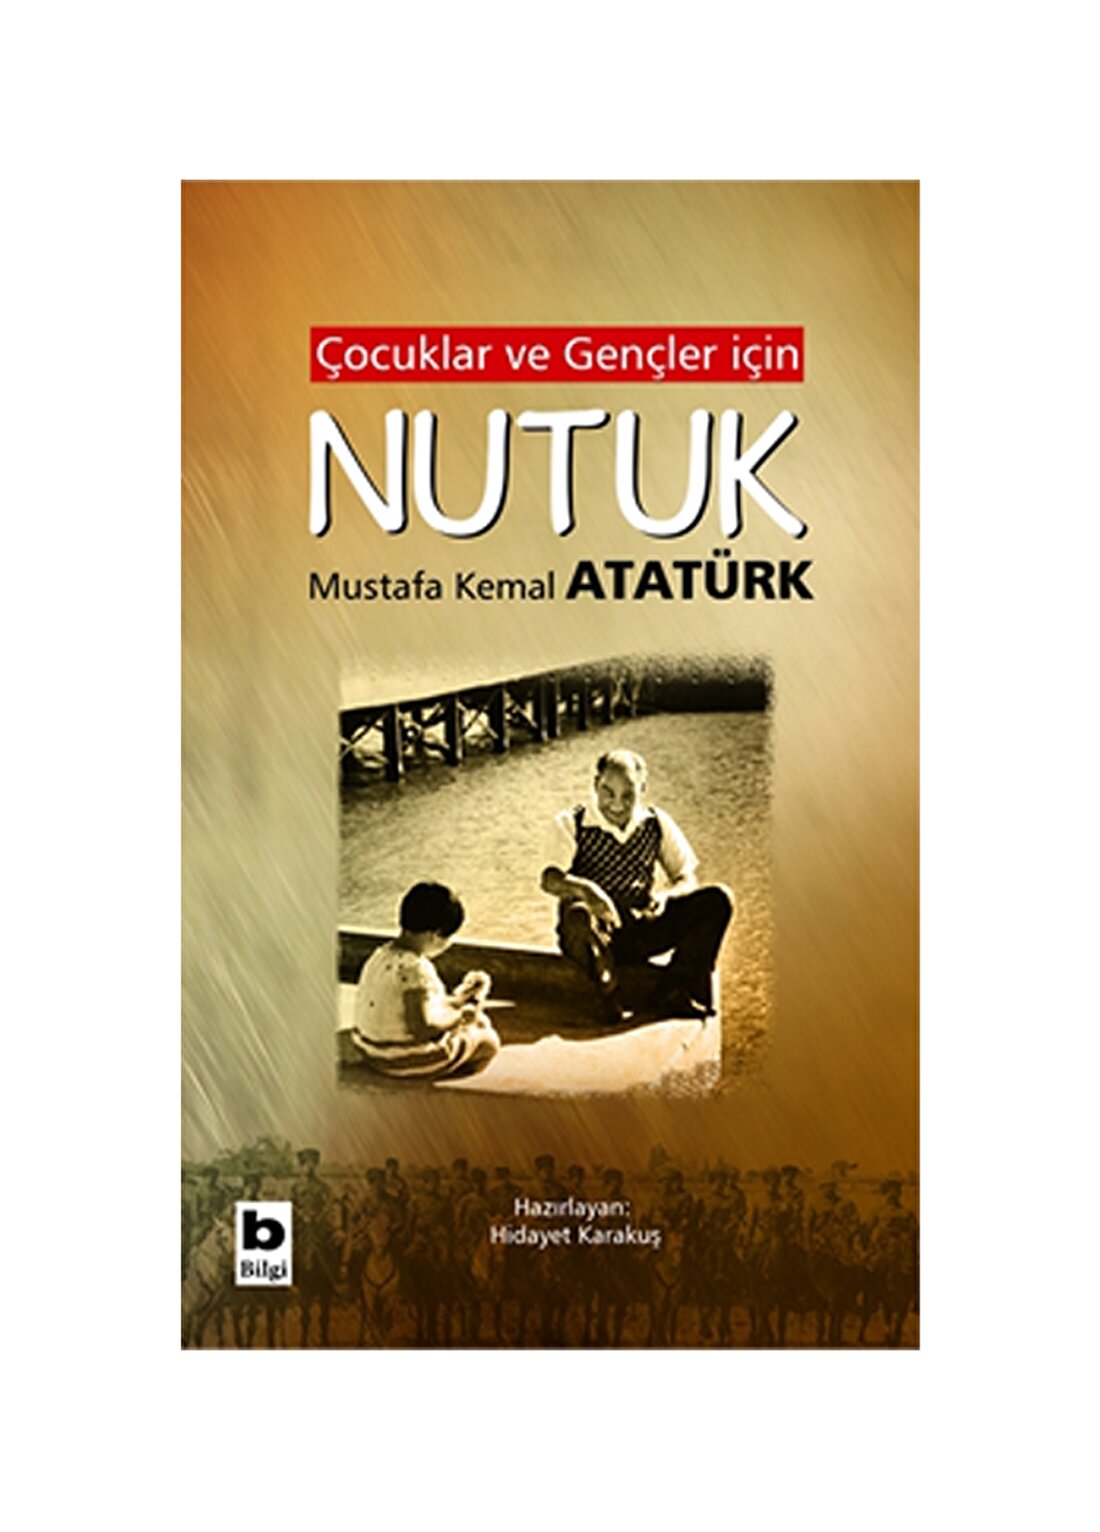 Bilgi Kitap Gazi Mustafa Kemal Atatürk - Çocuklar Ve Gençler Için Nutuk